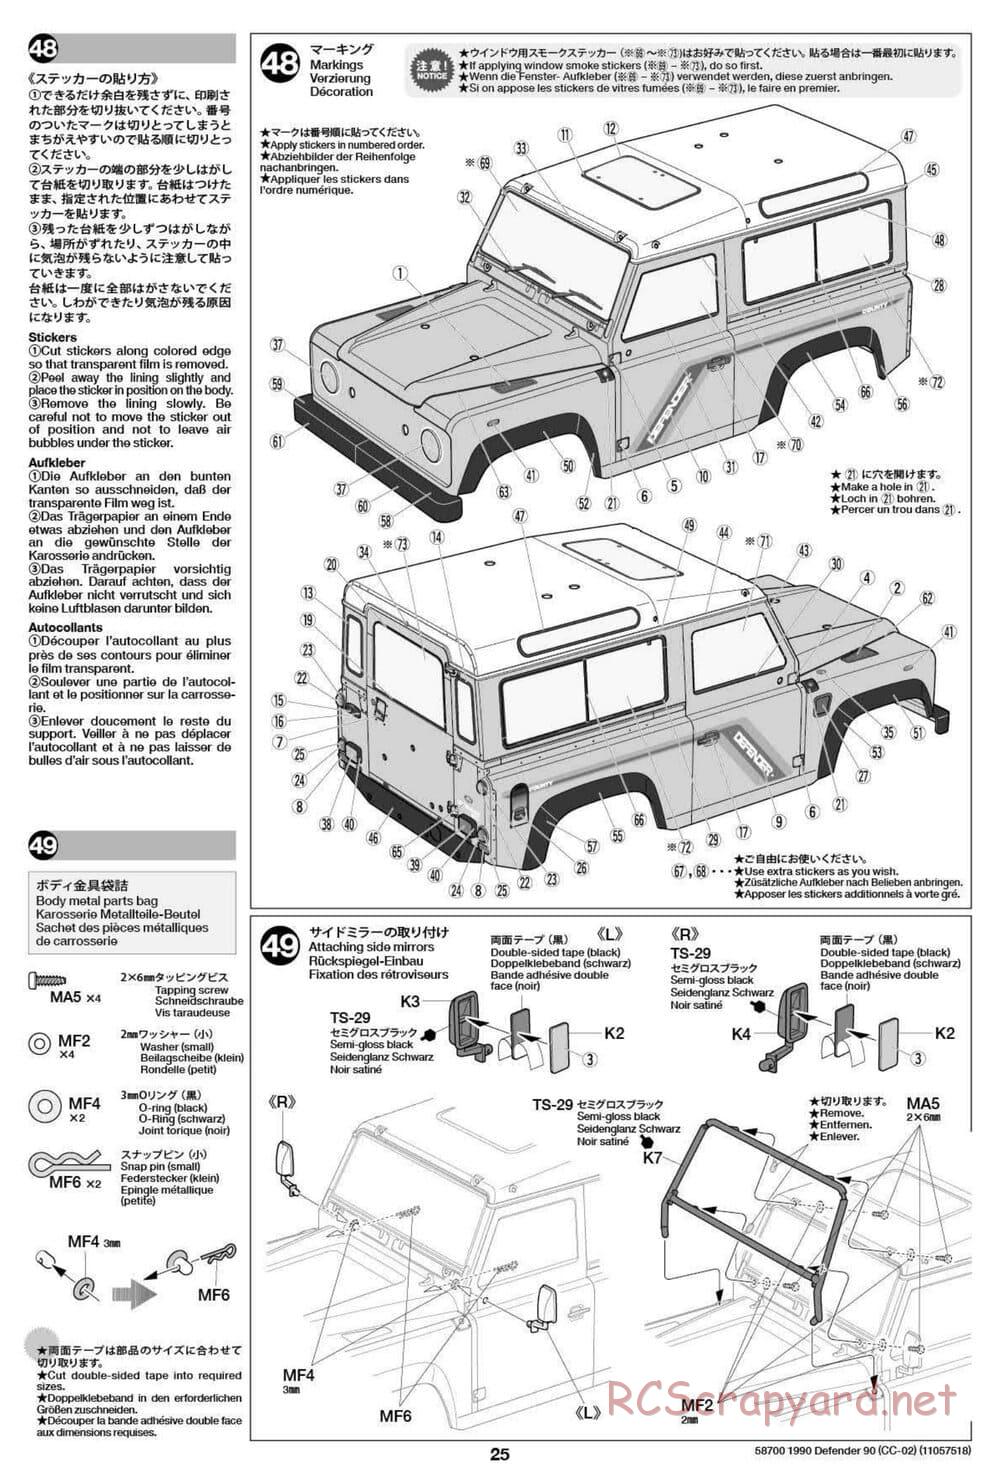 Tamiya - 1990 Land Rover Defender 90 - CC-02 Chassis - Manual - Page 25